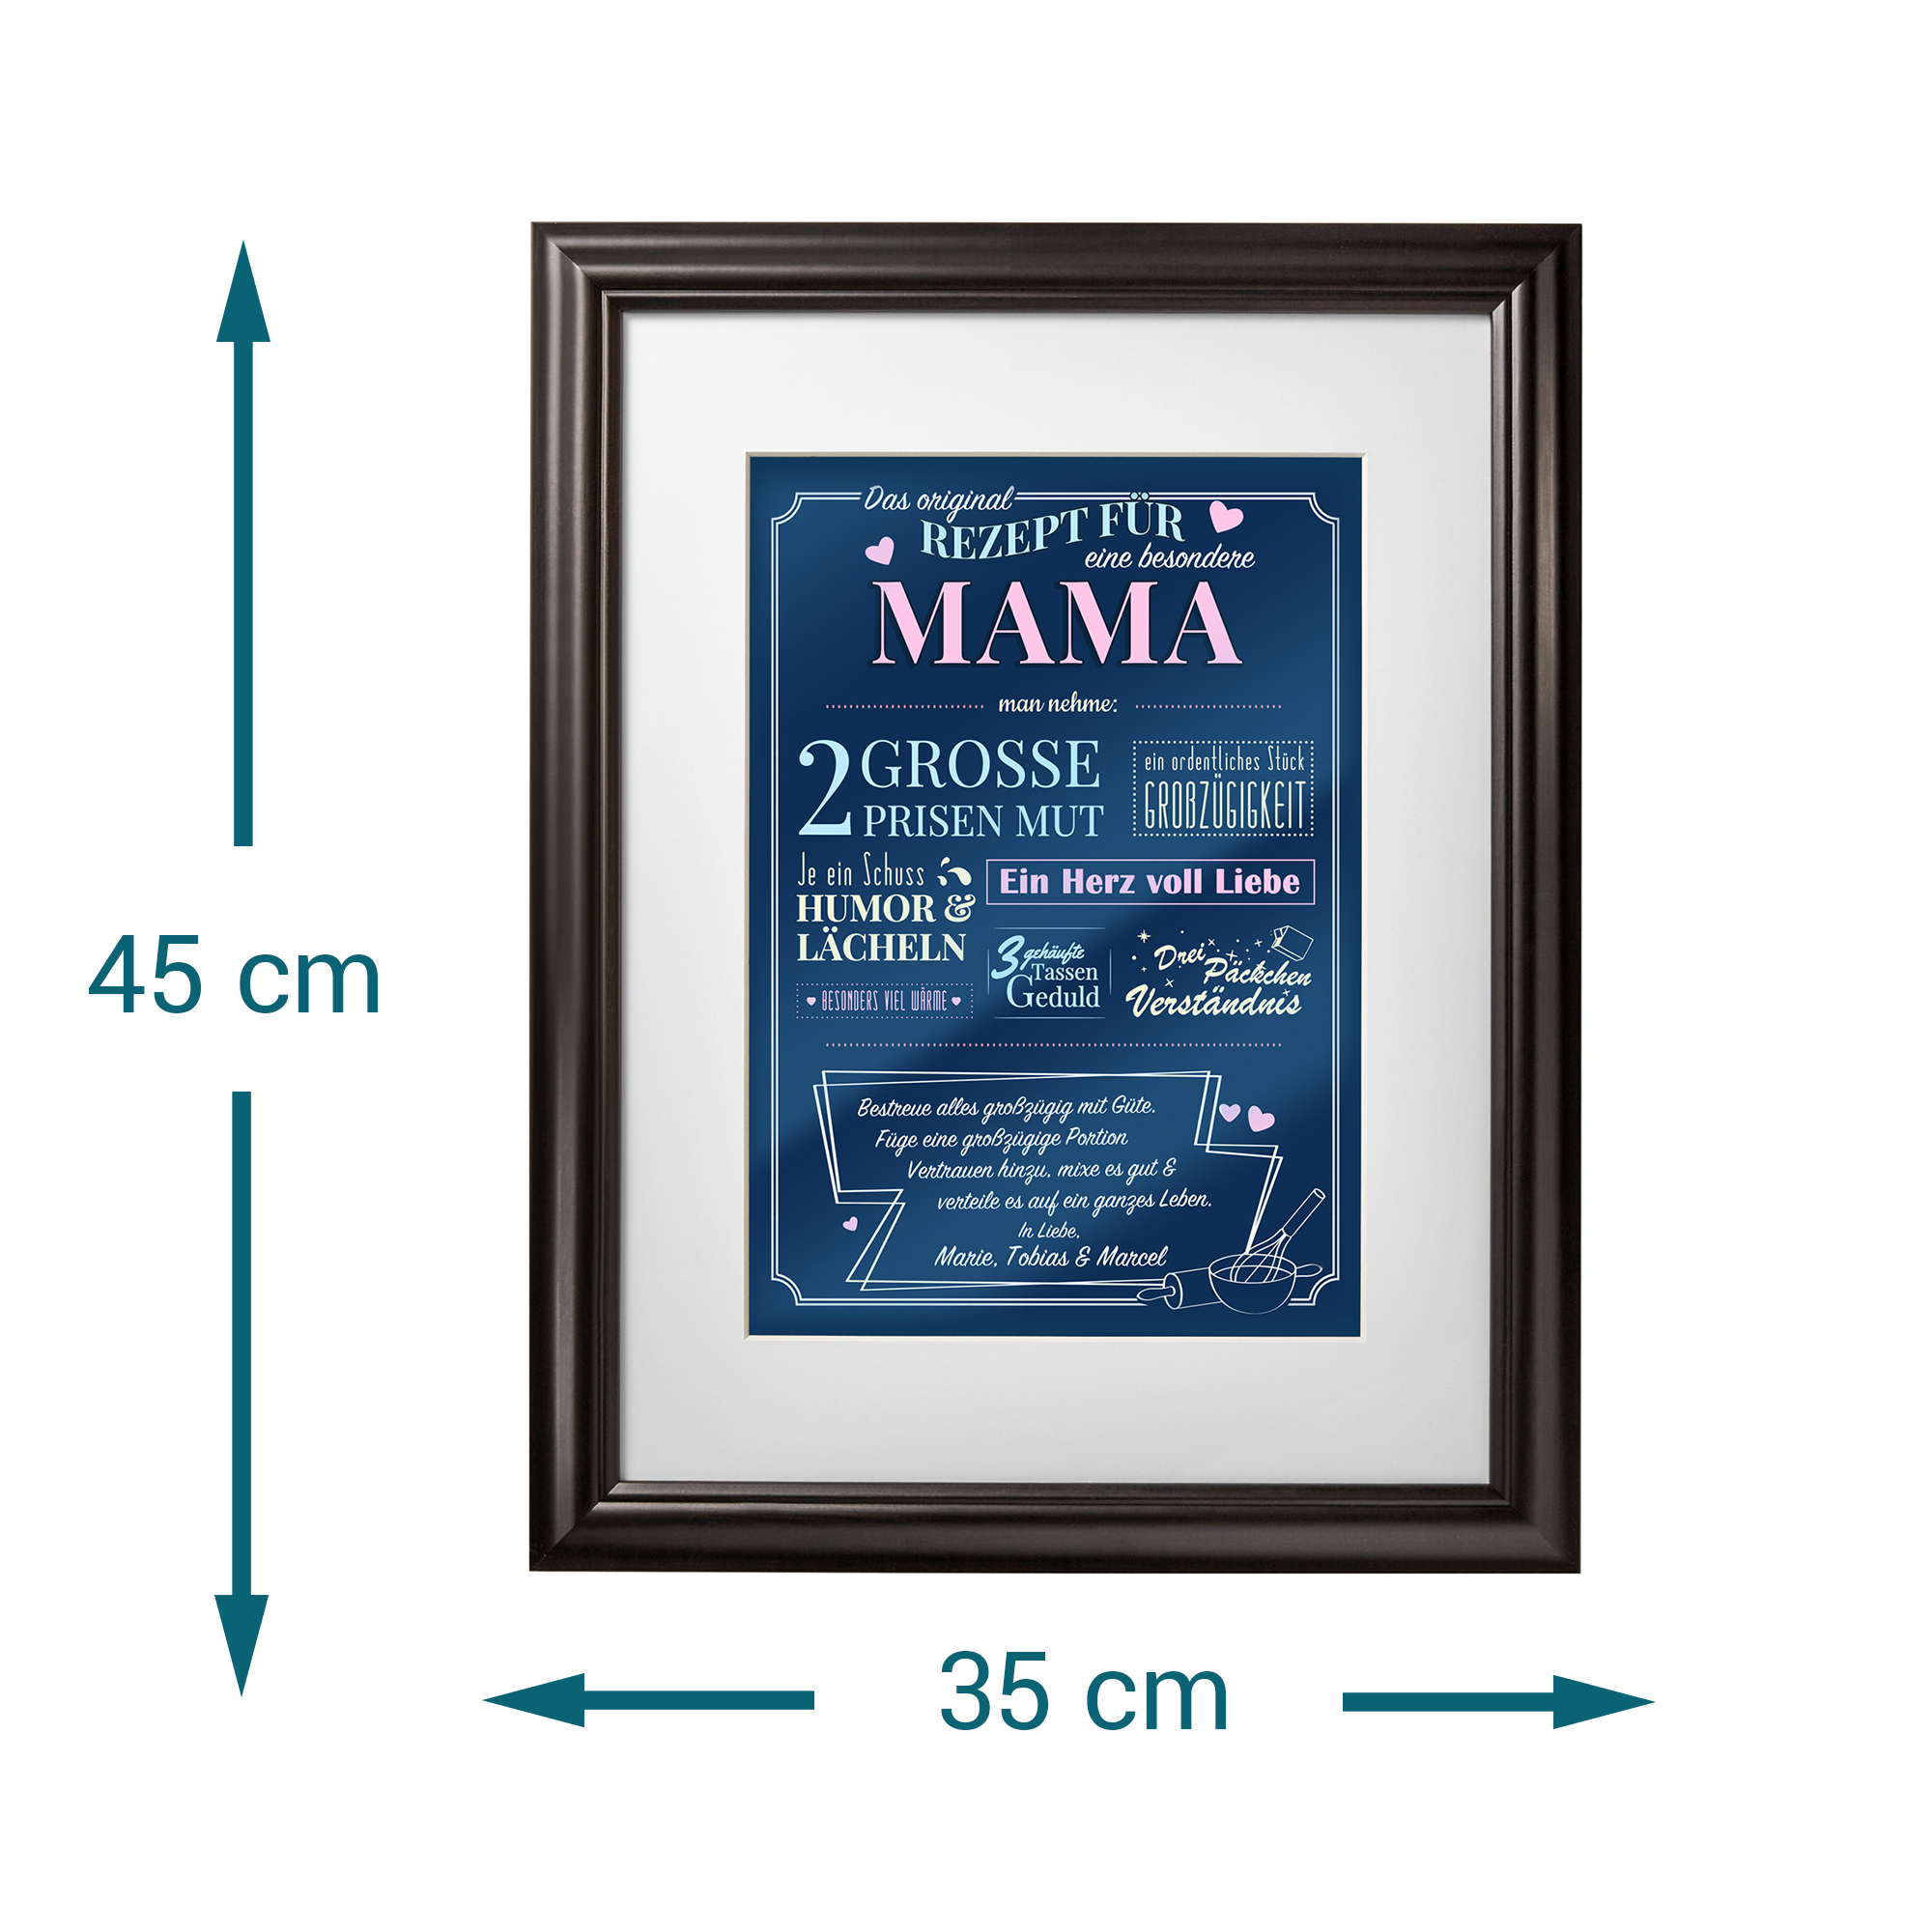 Personalisiertes Bild - Rezept für eine besondere Mama 236-18-MZ - 4